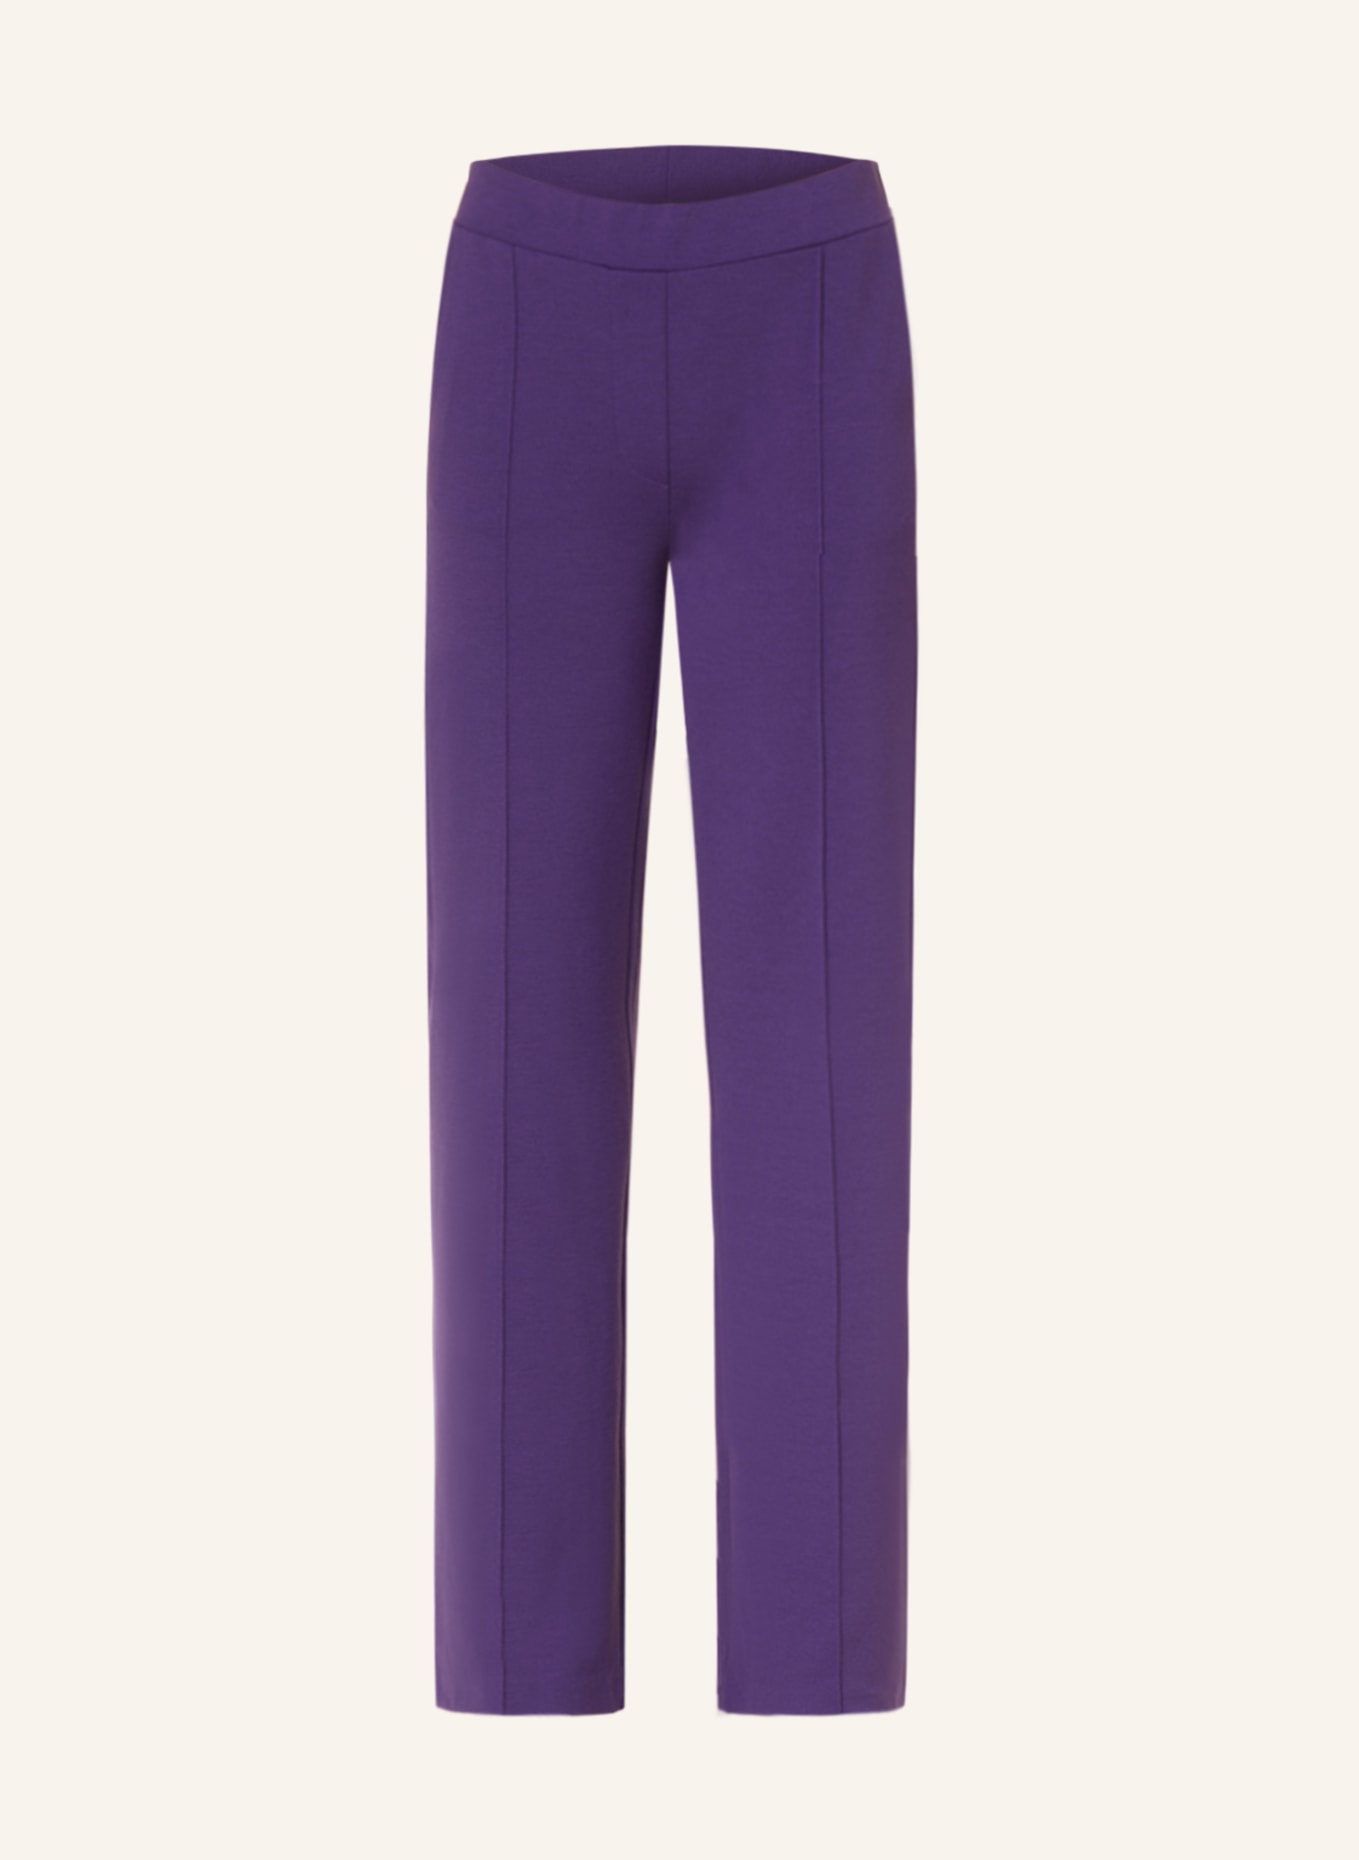 Smith & Soul Jersey pants, Color: PURPLE (Image 1)